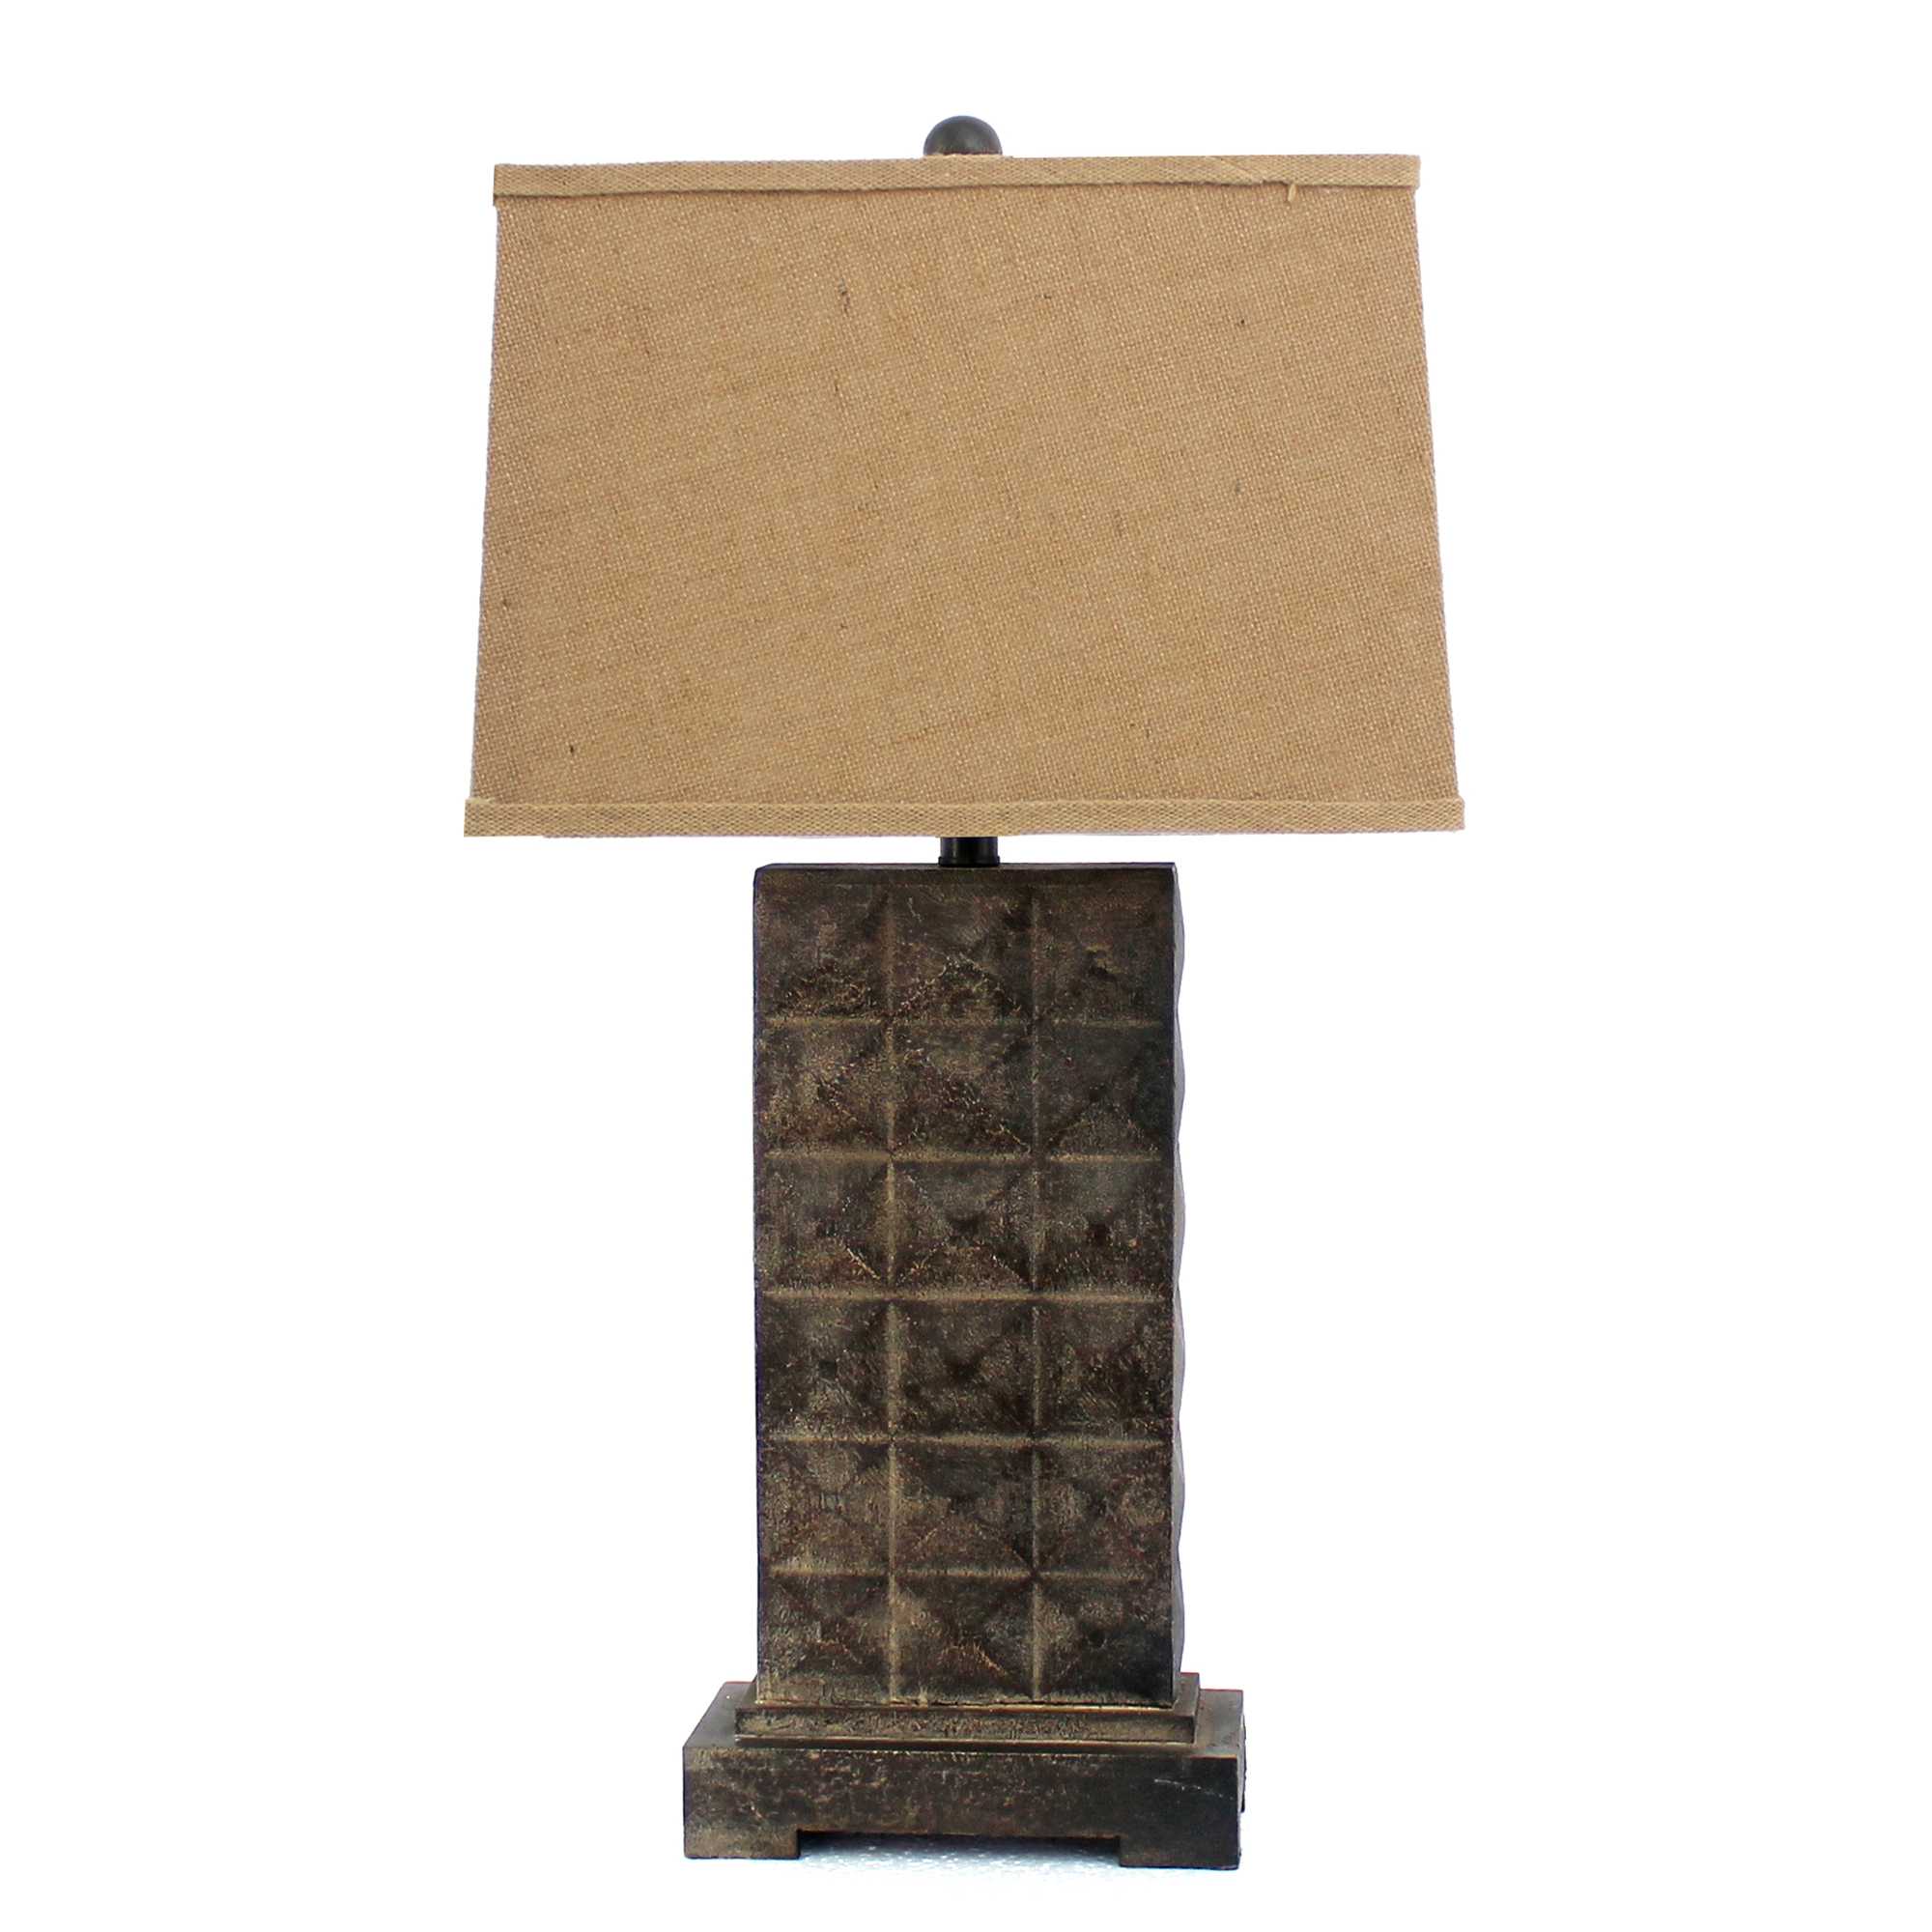 4.75" x 9.5" x 29.5" Brown, Vintage With Metal Pedestal - Table Lamp